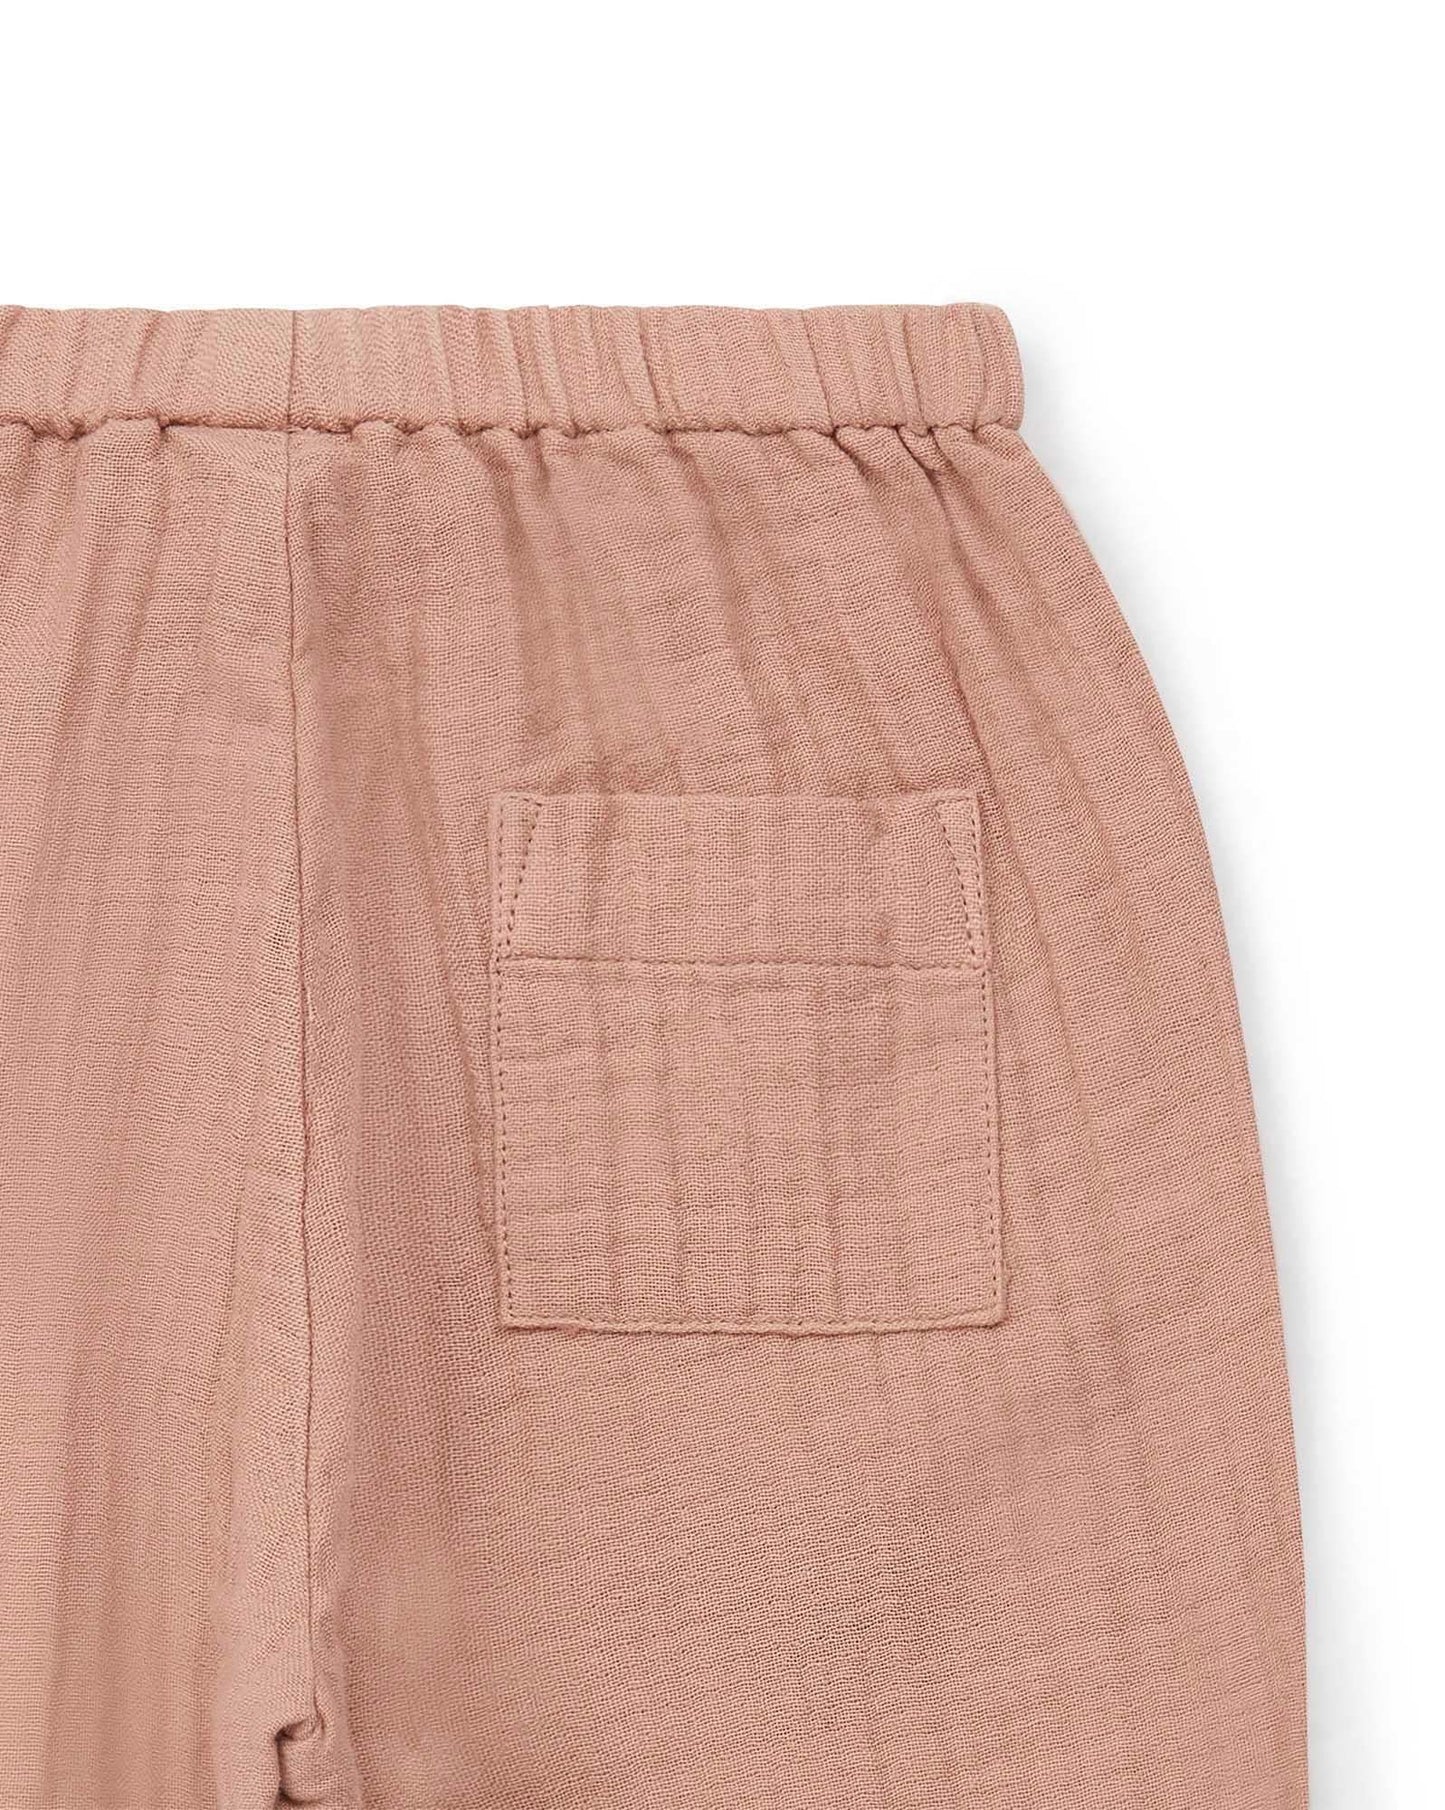 Pantalon Futur rose Bébé gaze de coton biologique certifié GOTS